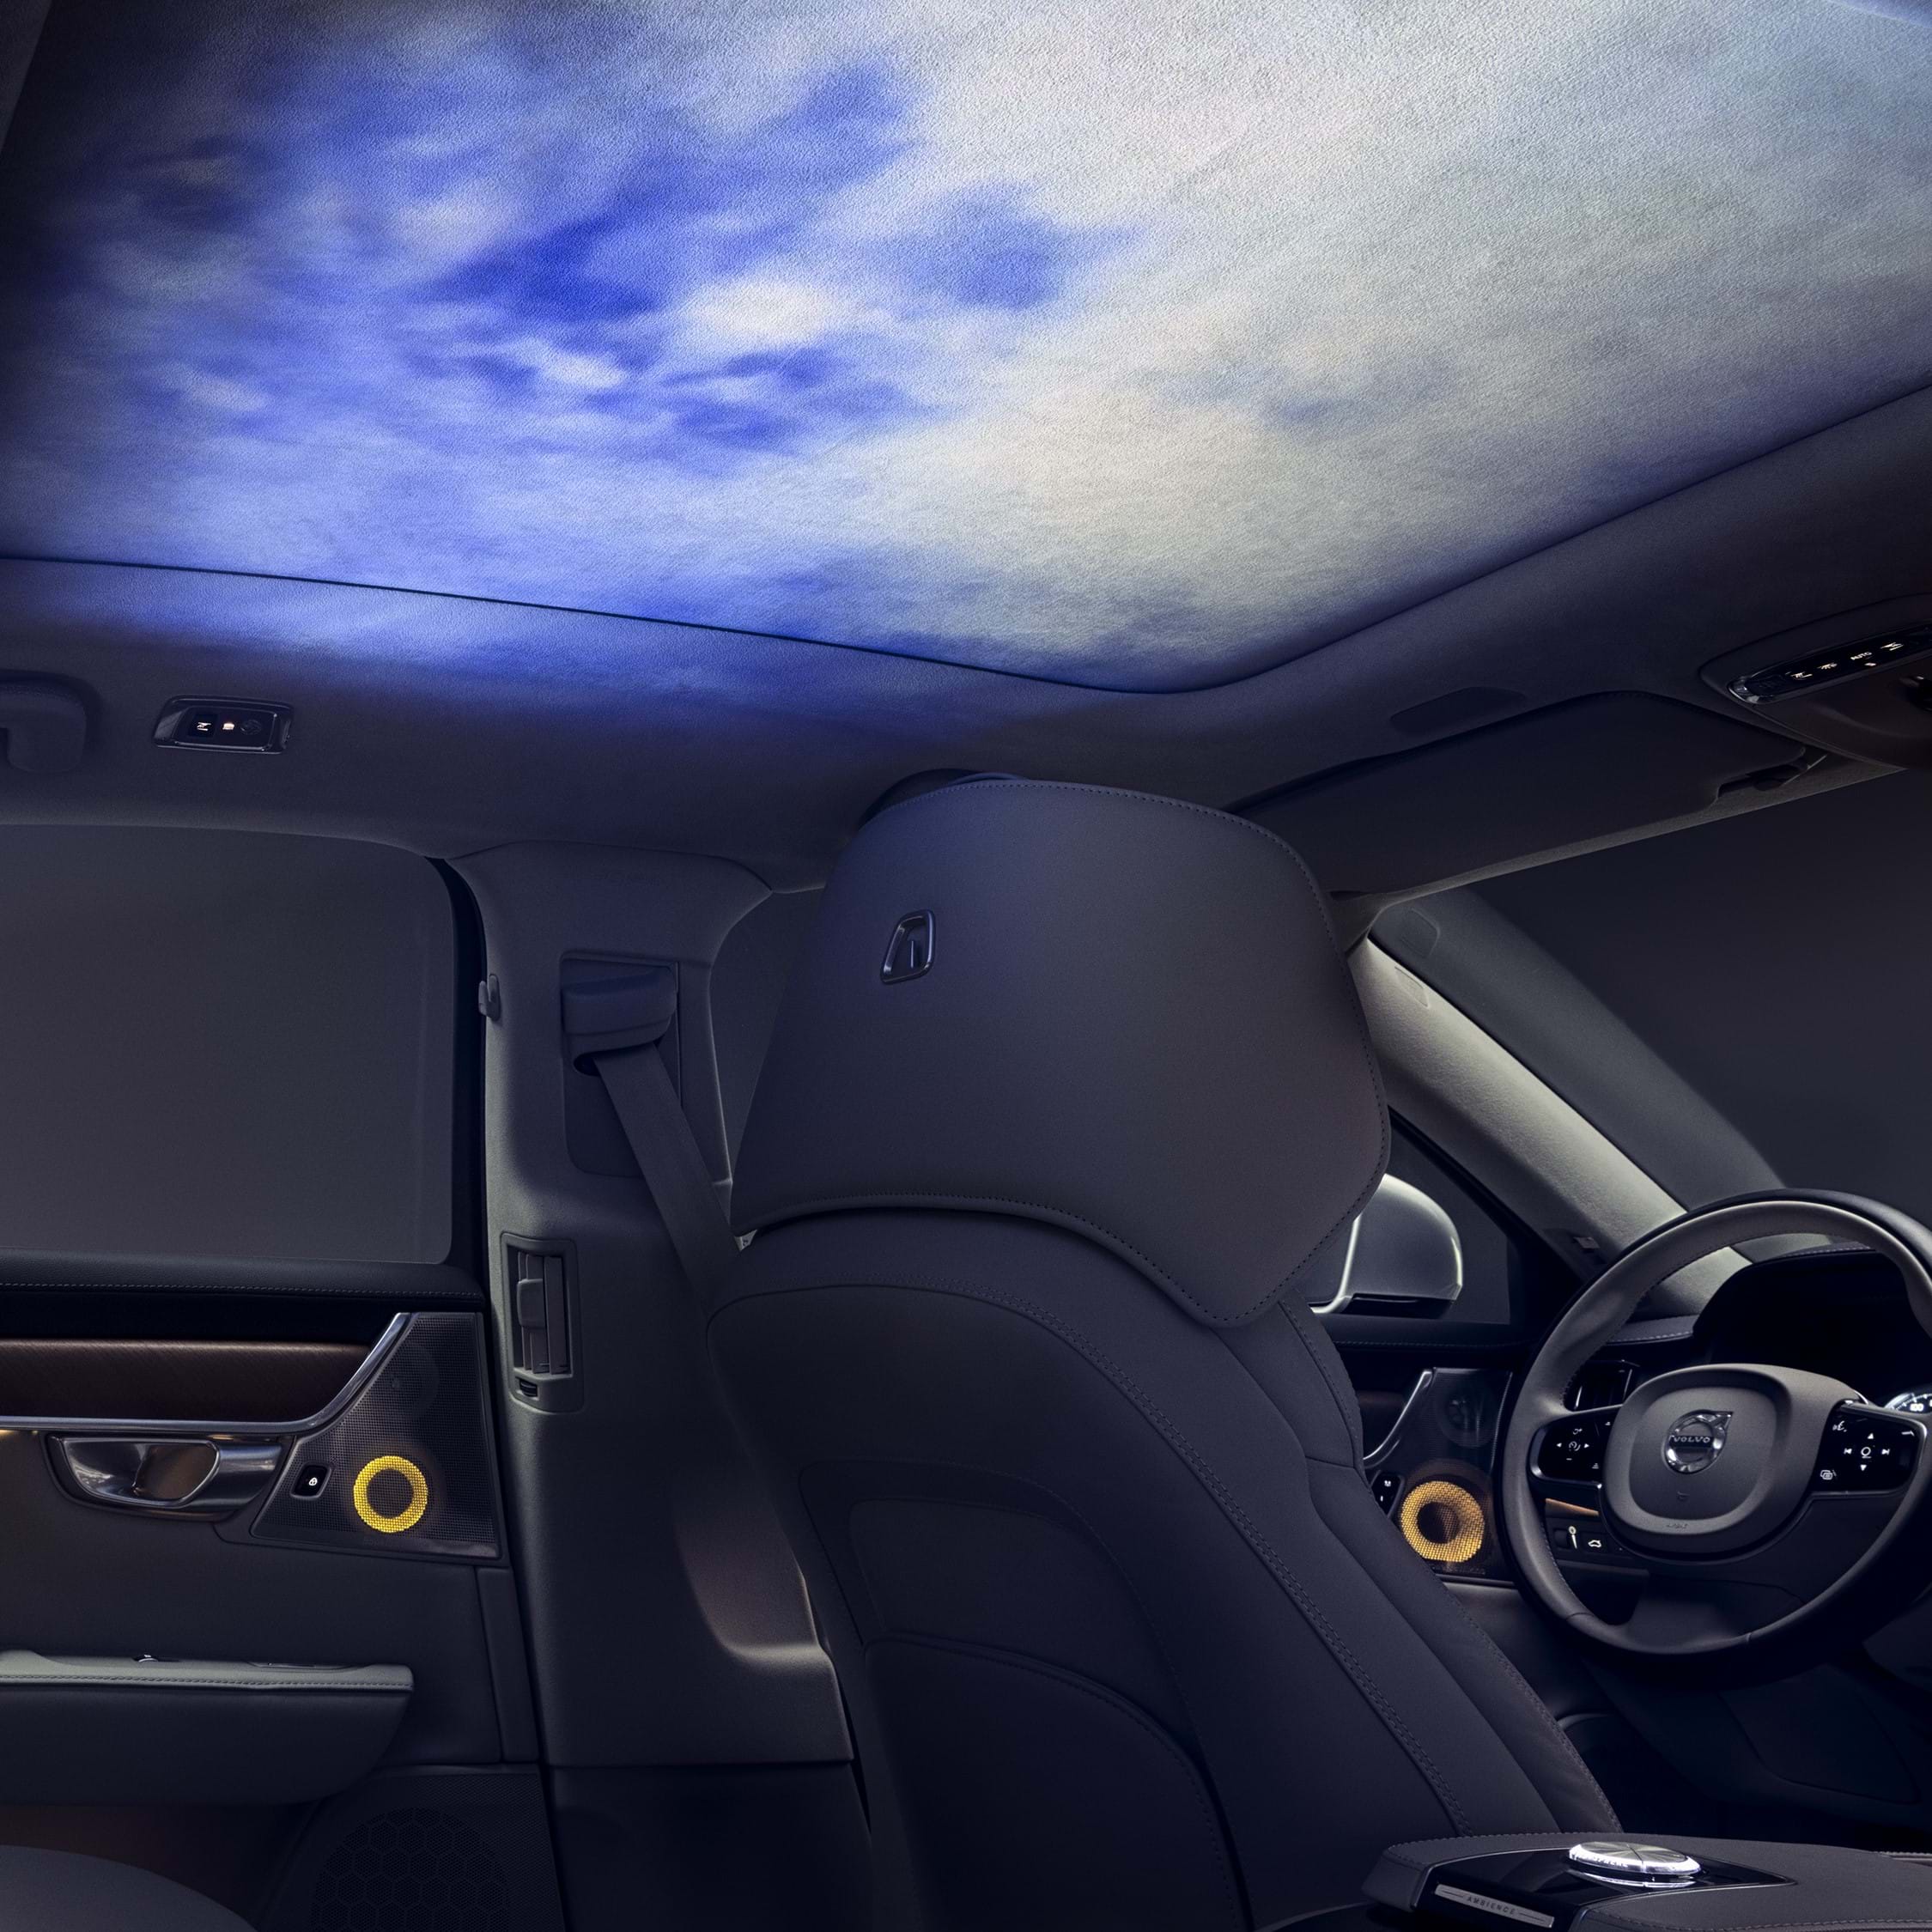 Interior do Volvo com luz ambiente projetada no teto interno